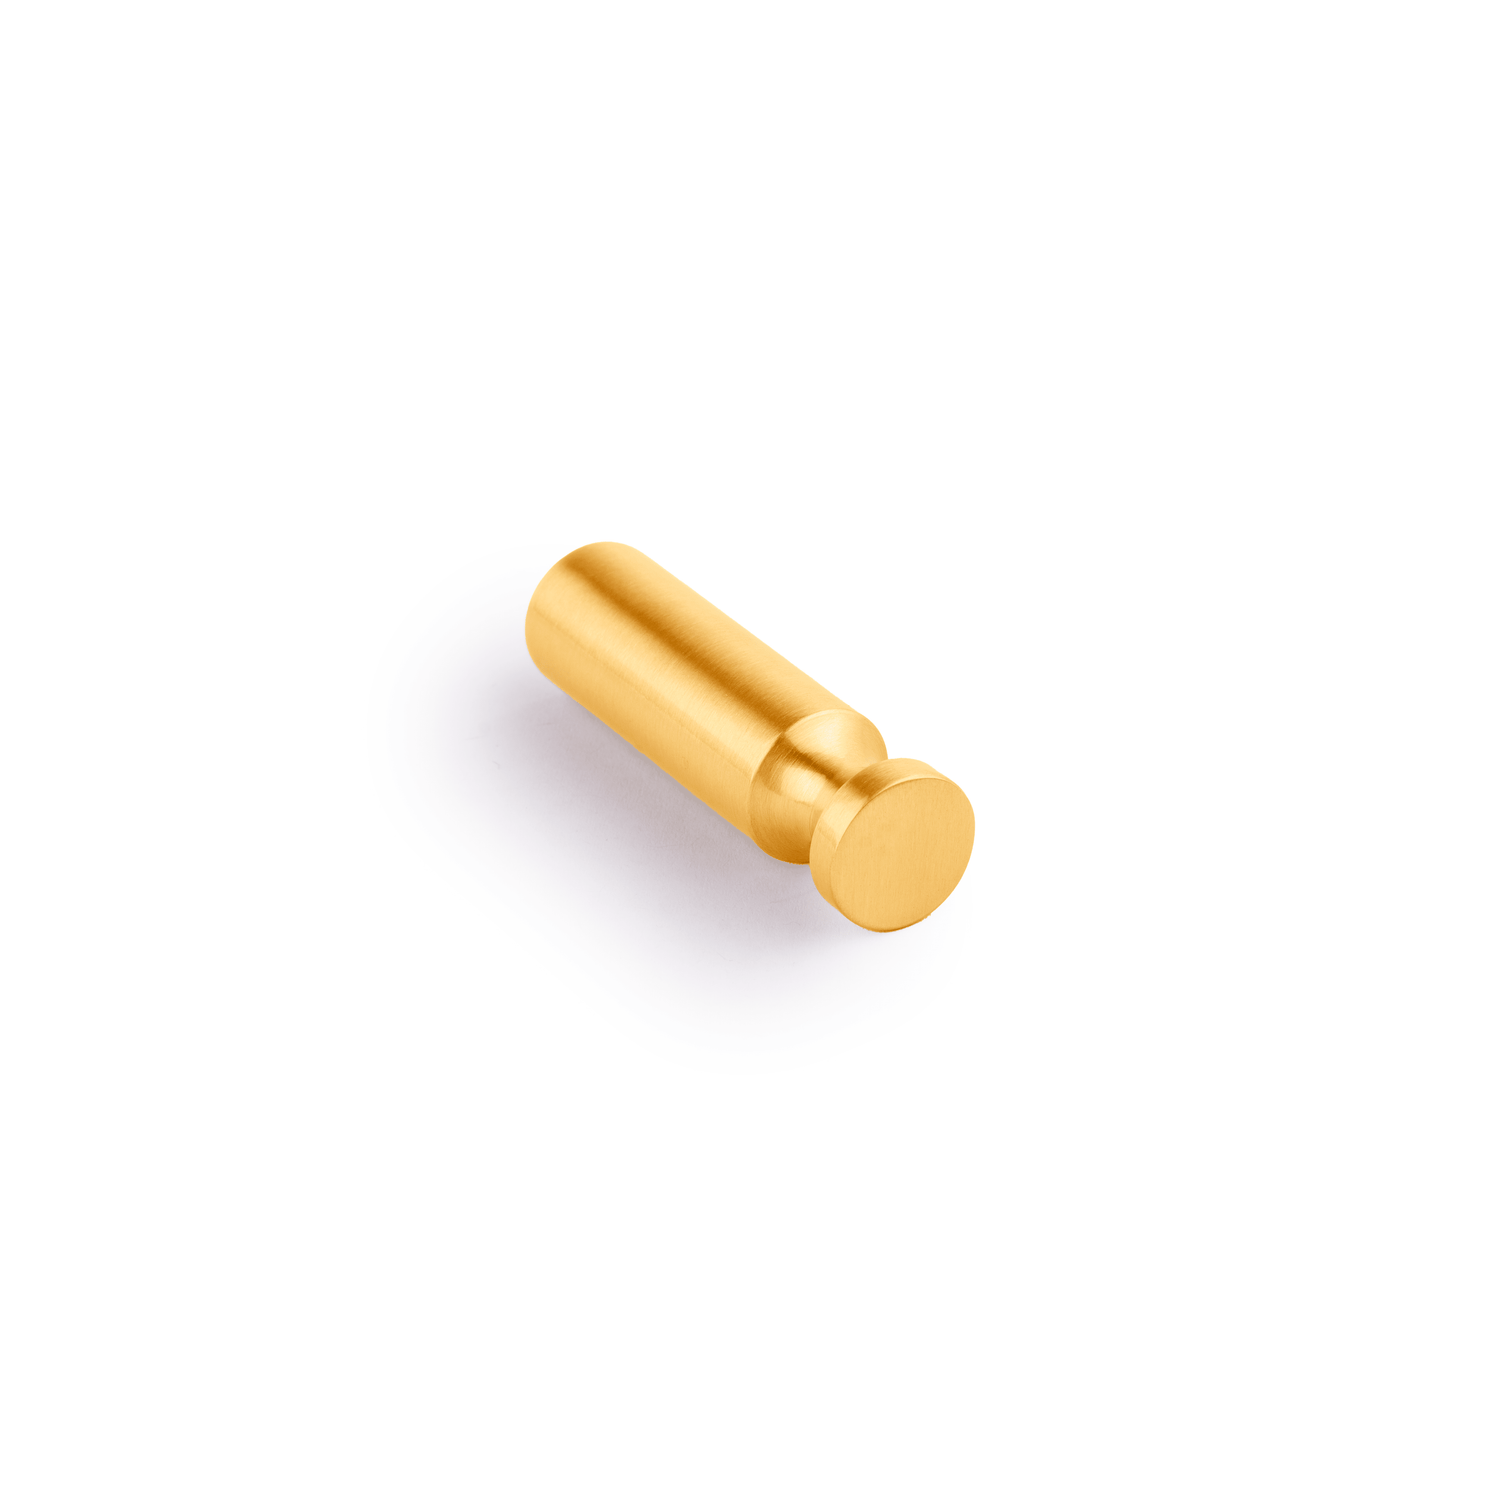 MANTARA-B-0092 Hook Hook 15mm / Gold / Brass - M A N T A R A